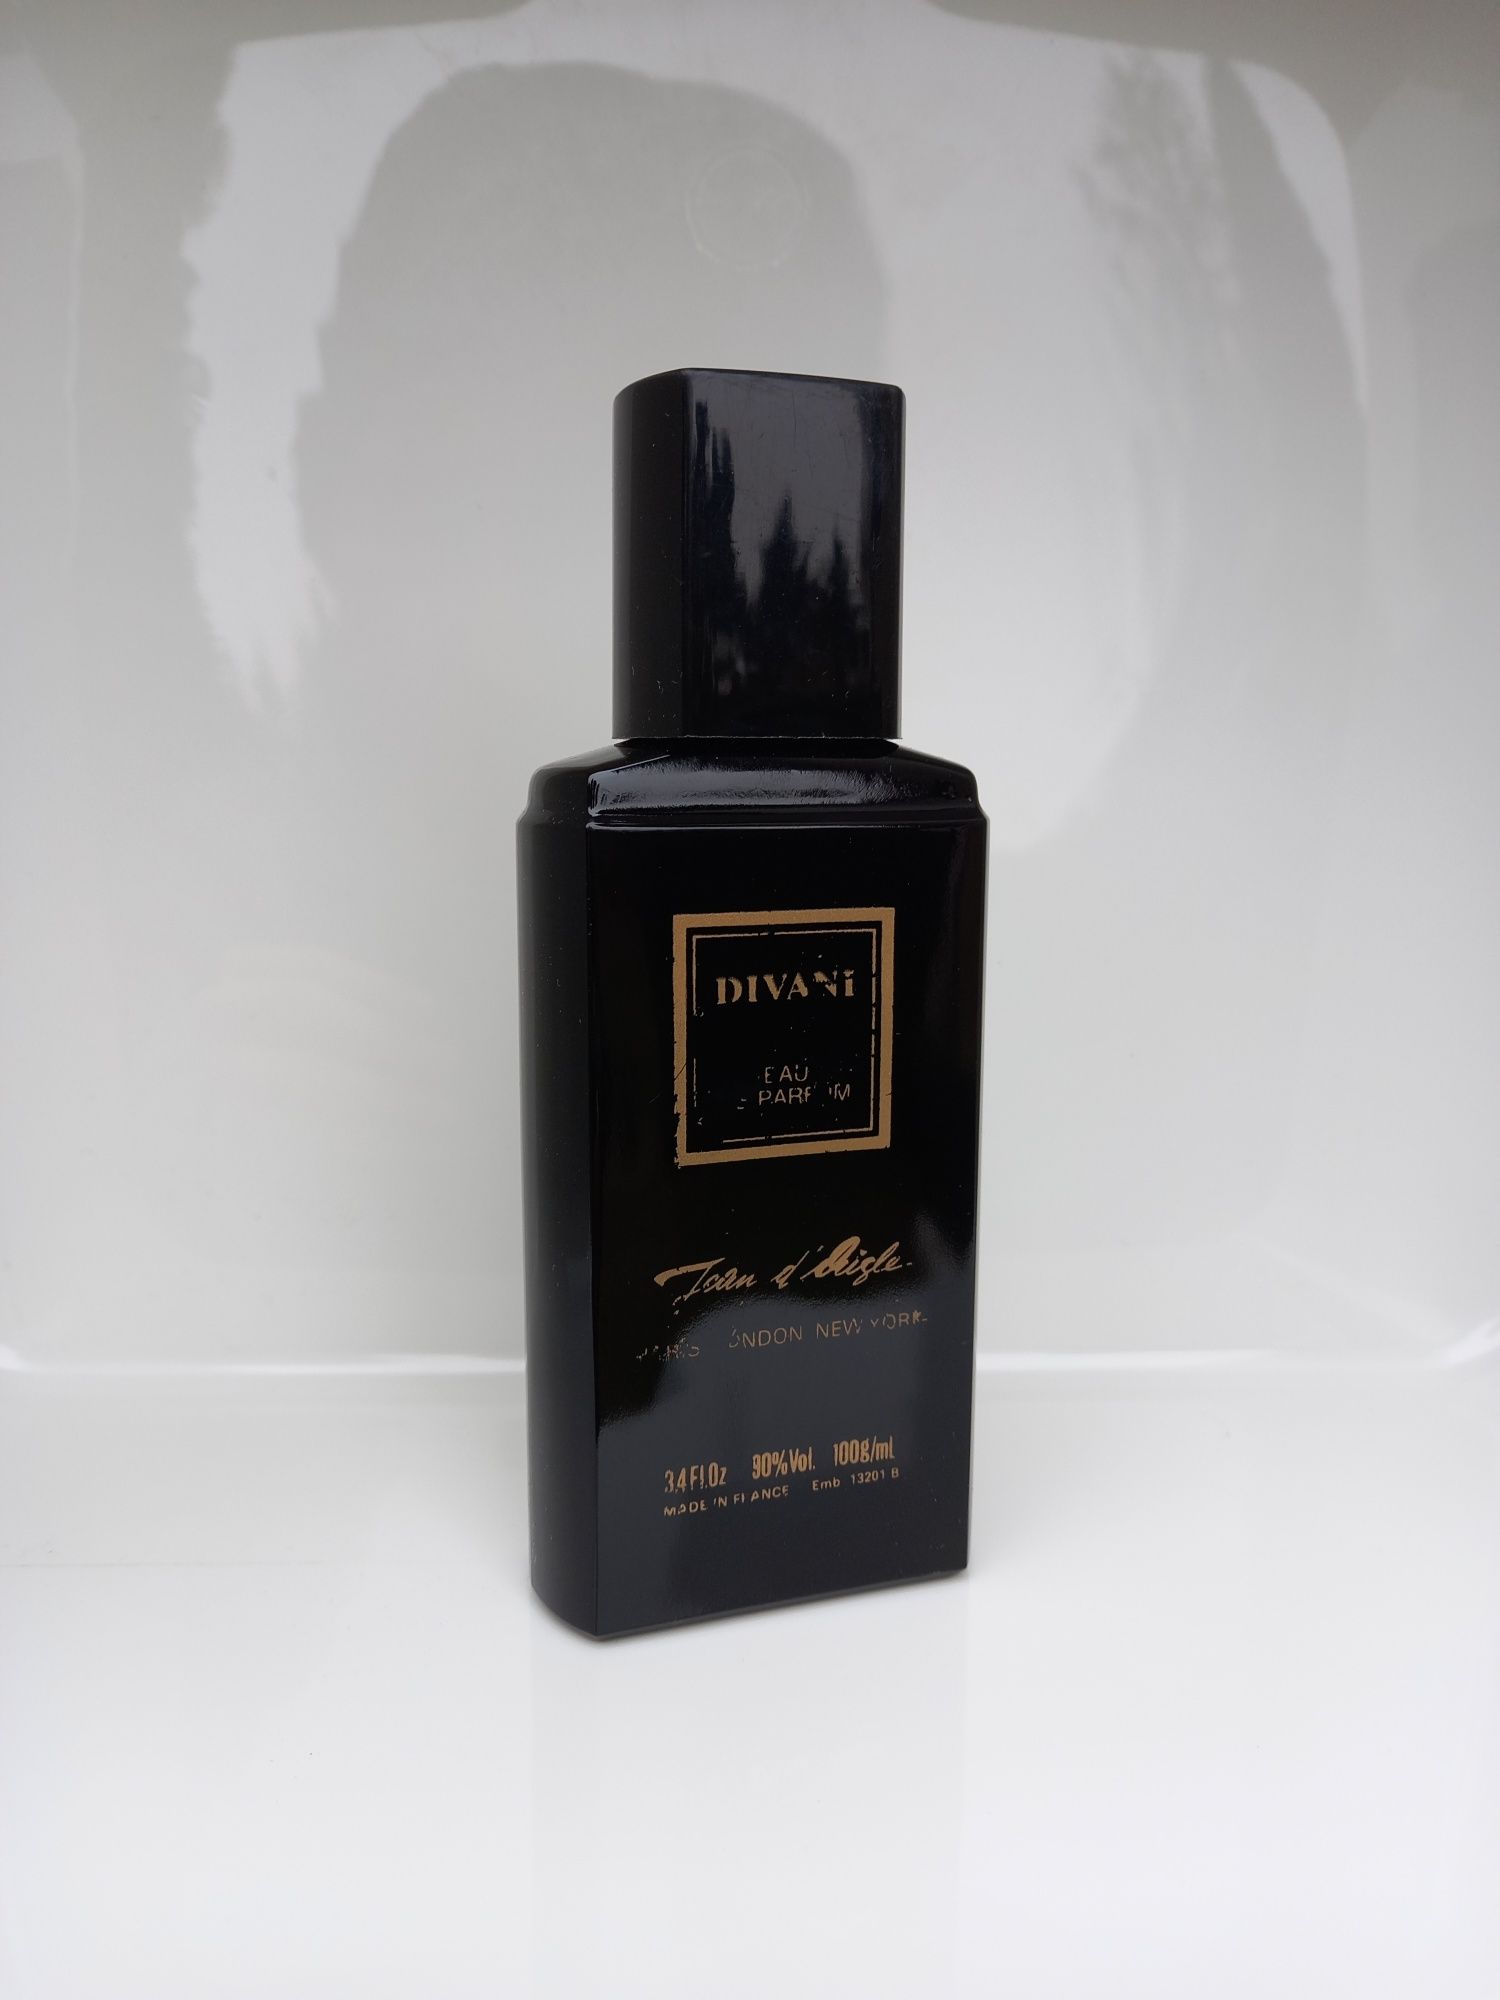 Divani Jean d Aigle 100 ml EDP perfumy męskie Unikat Vintage !